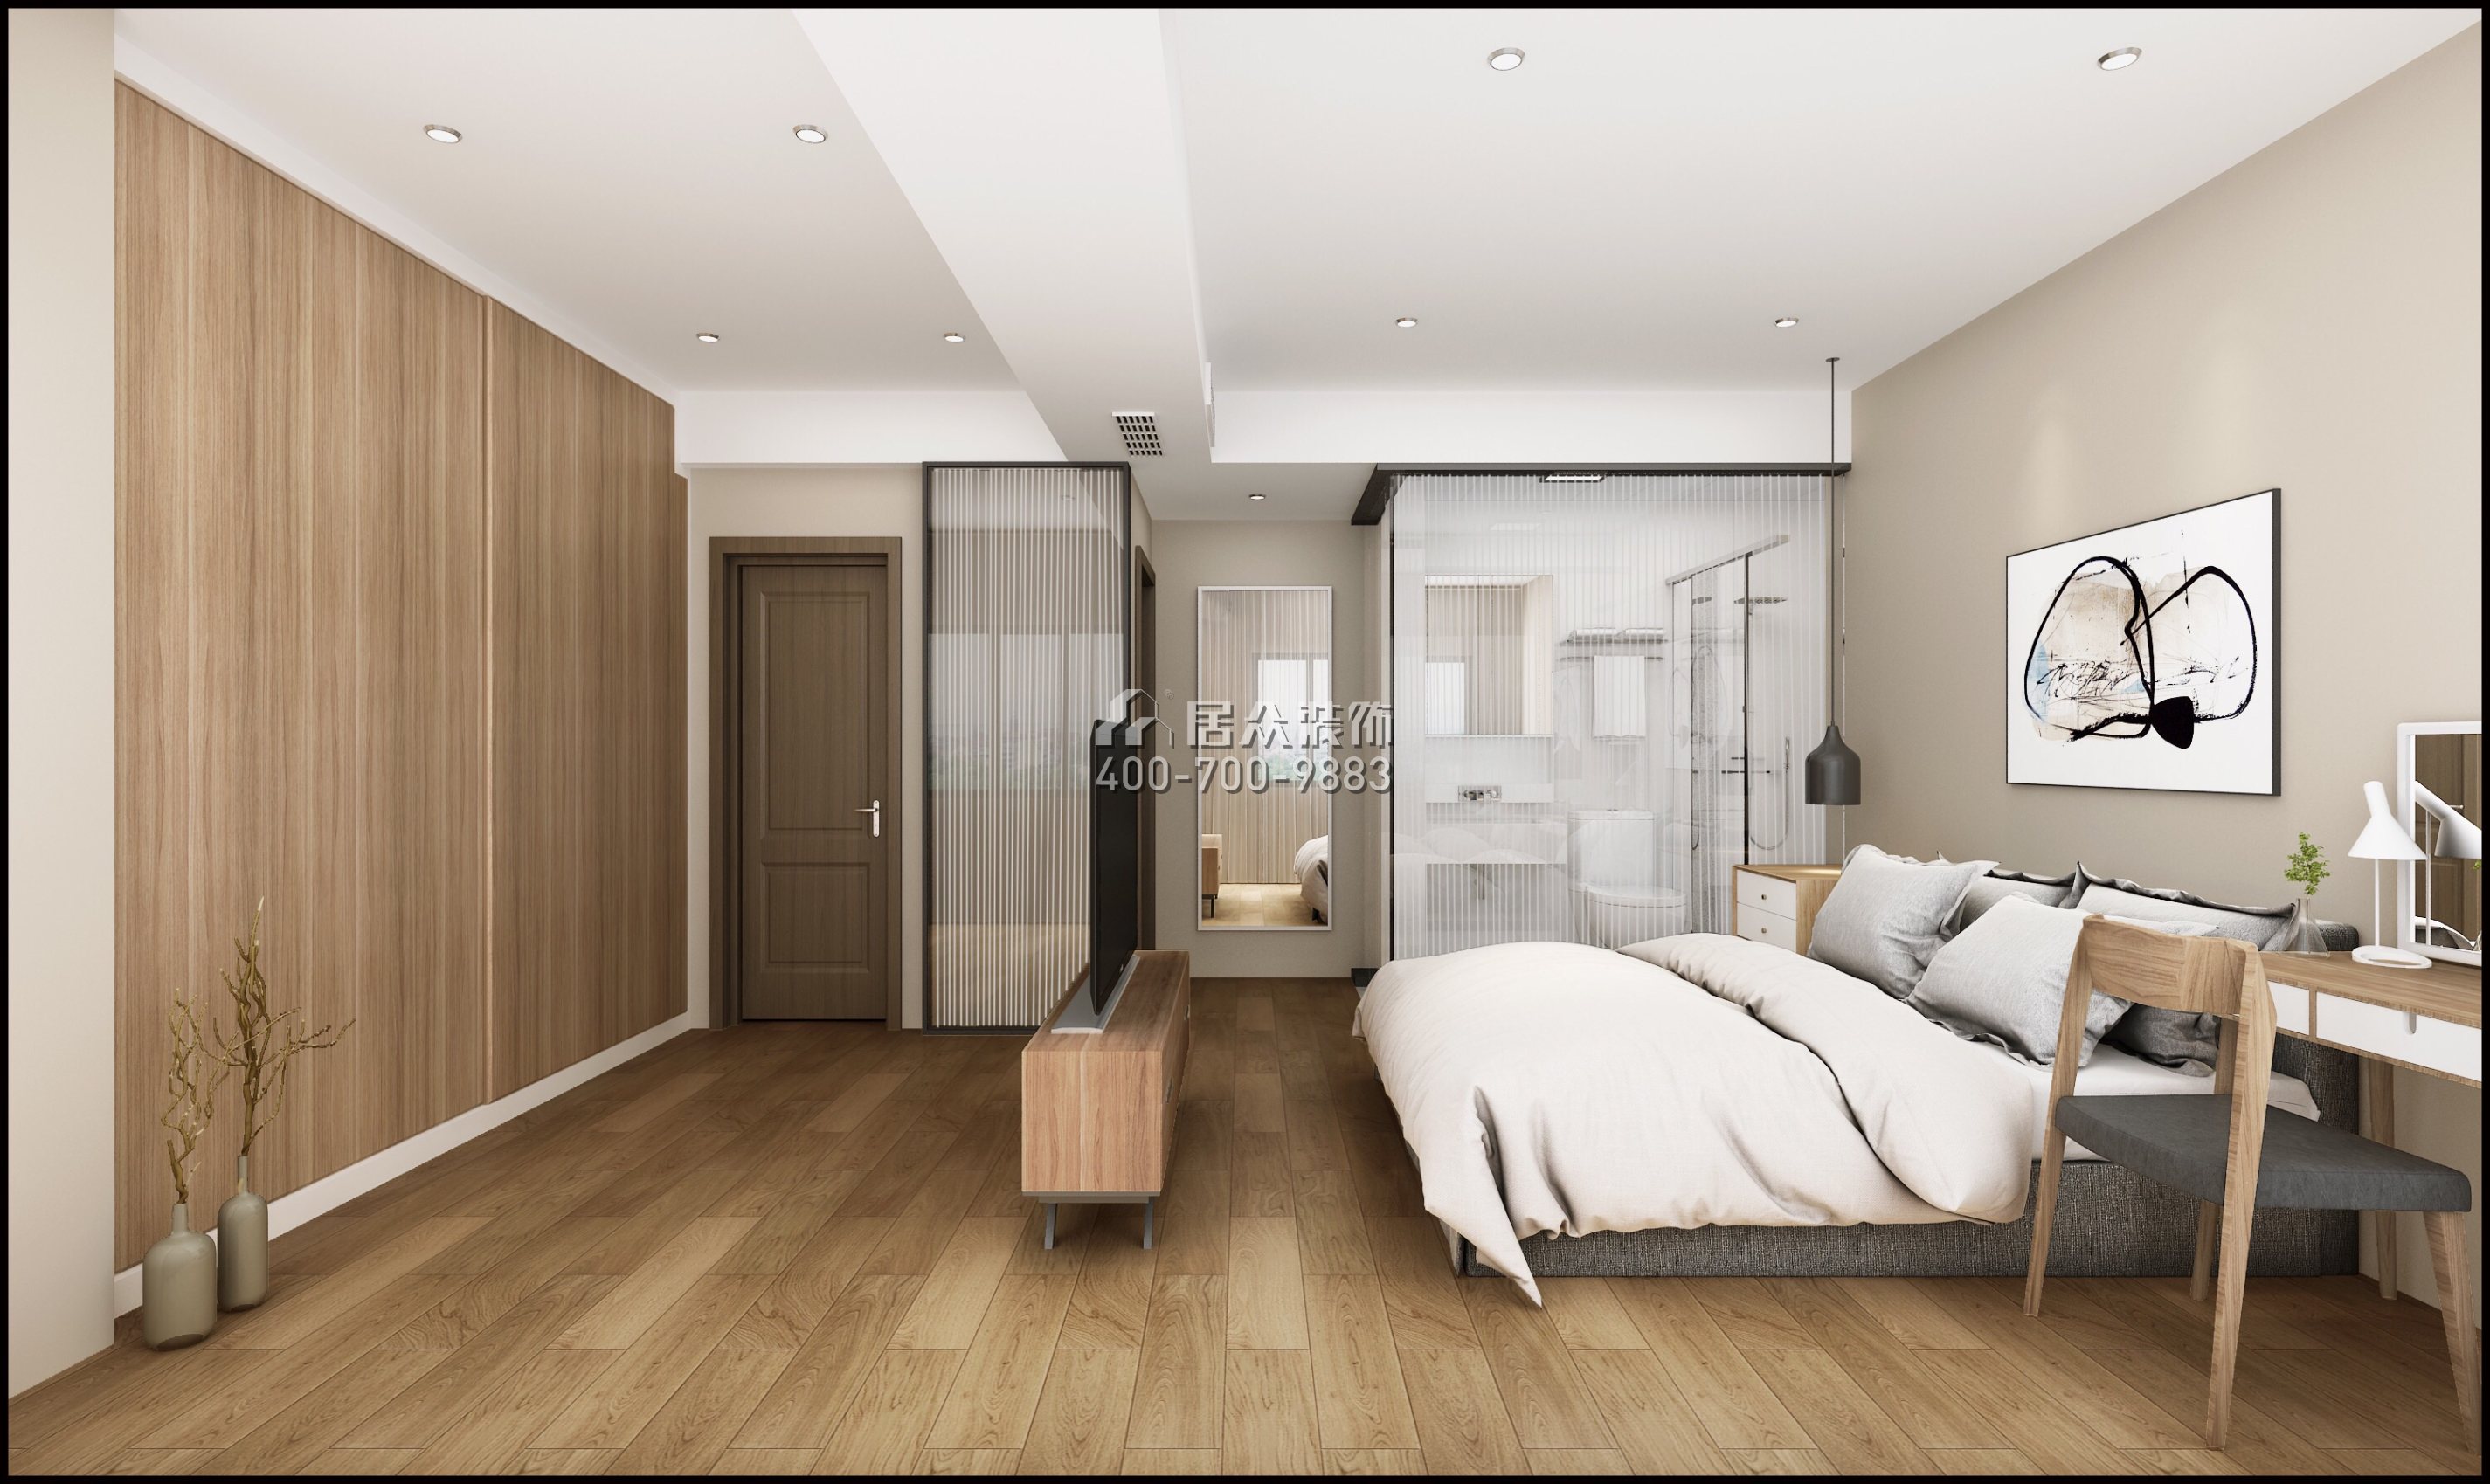 華潤城一期89平方米北歐風格平層戶型臥室裝修效果圖